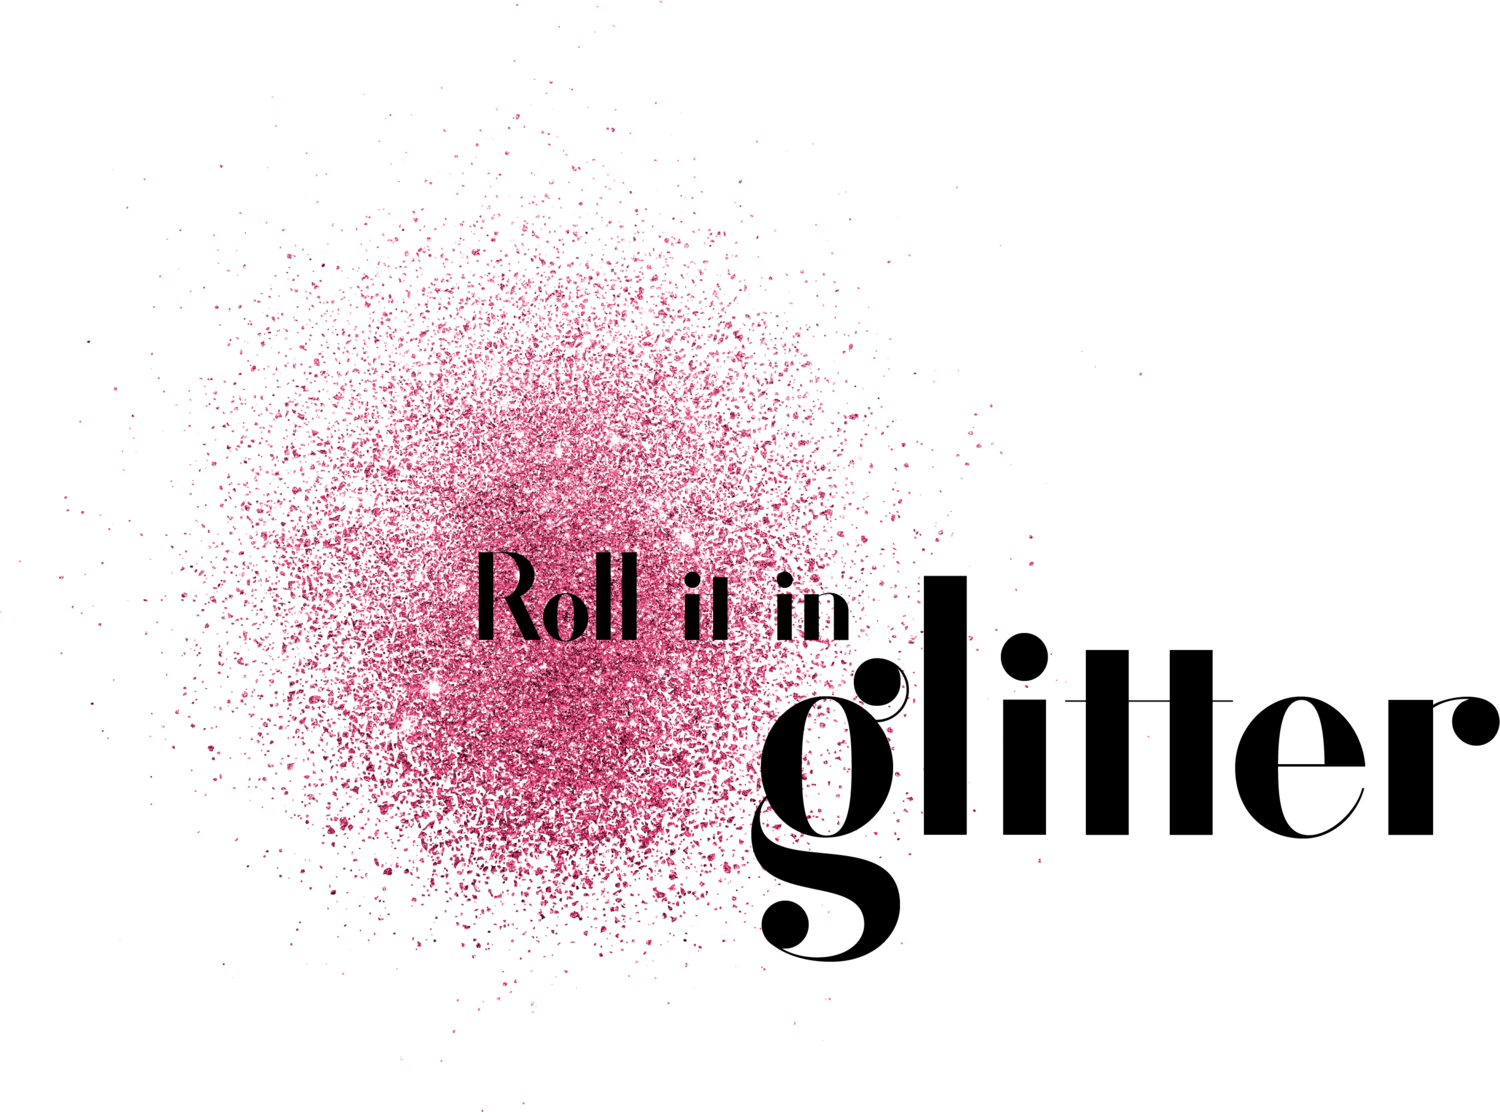 Roll it in glitter - Retouching